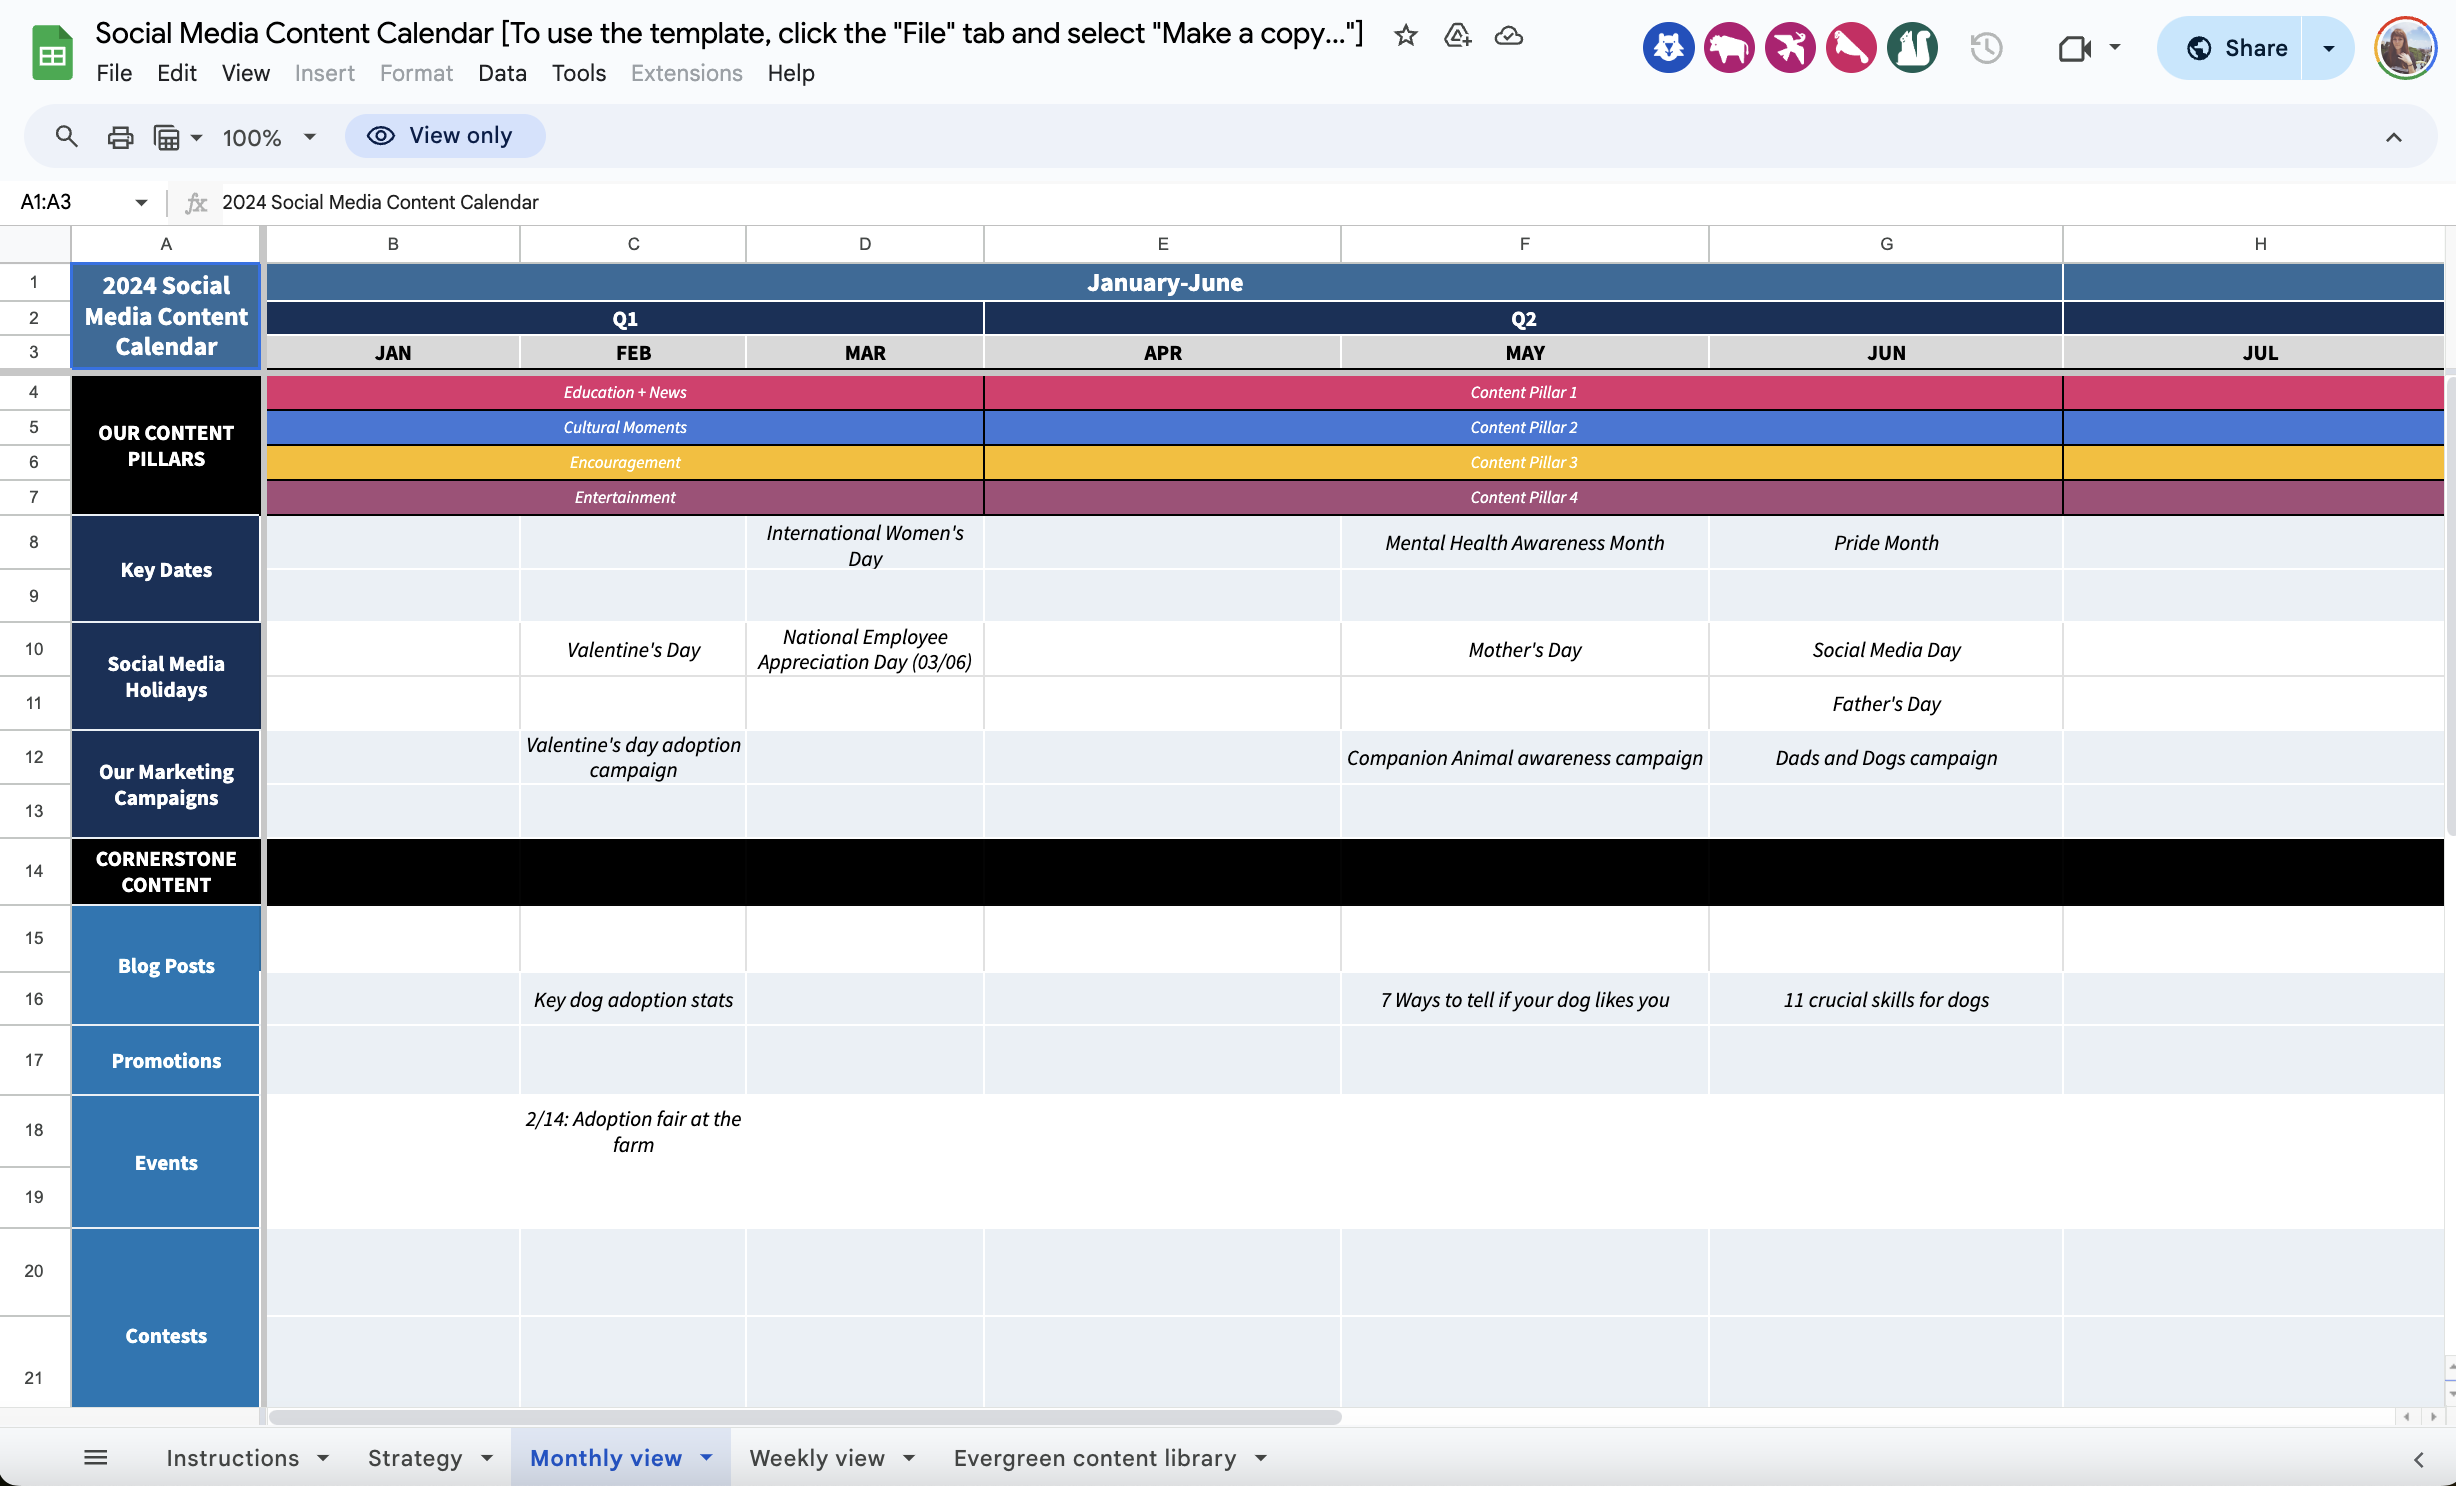 Capture d'écran de la feuille de calcul numérique du modèle de calendrier de contenu des médias sociaux Hootsuite. Le calendrier est étiqueté par mois et par semaine, avec des barres de couleur indiquant les thèmes de contenu planifiés et les dates des différents événements sociaux.